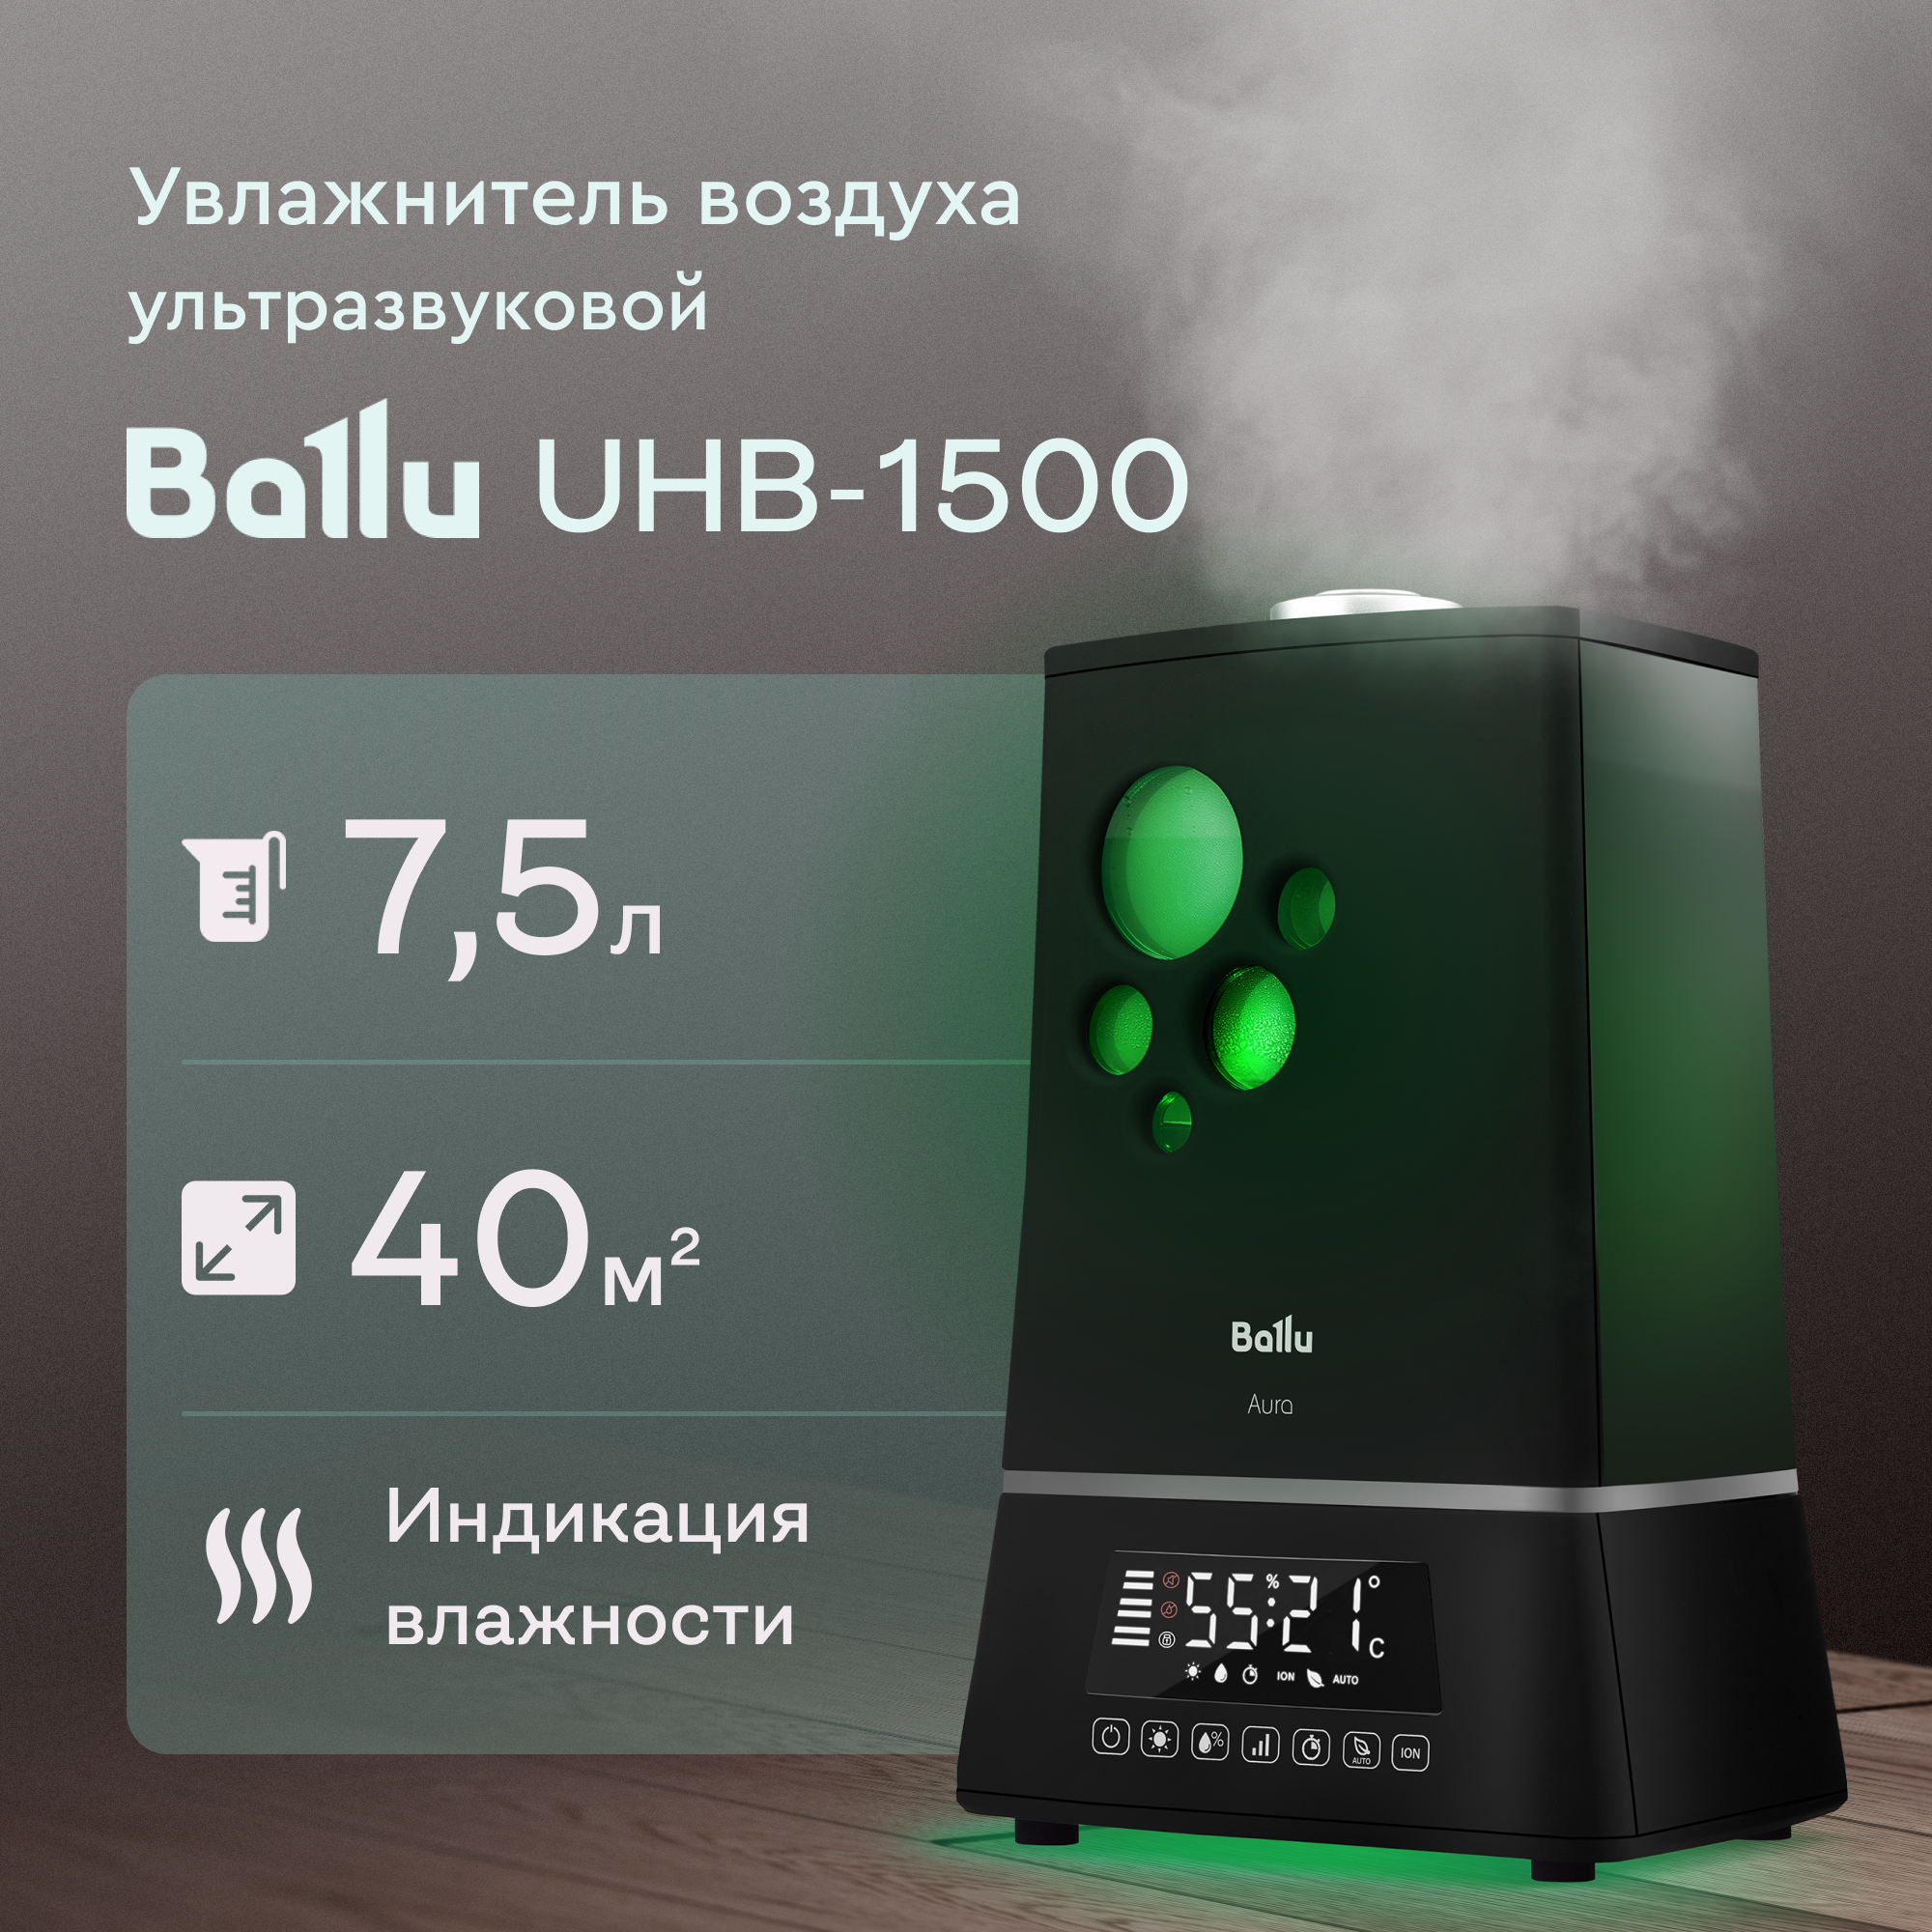 Увлажнитель воздуха Ballu UHB-1500 купить в Красноярске